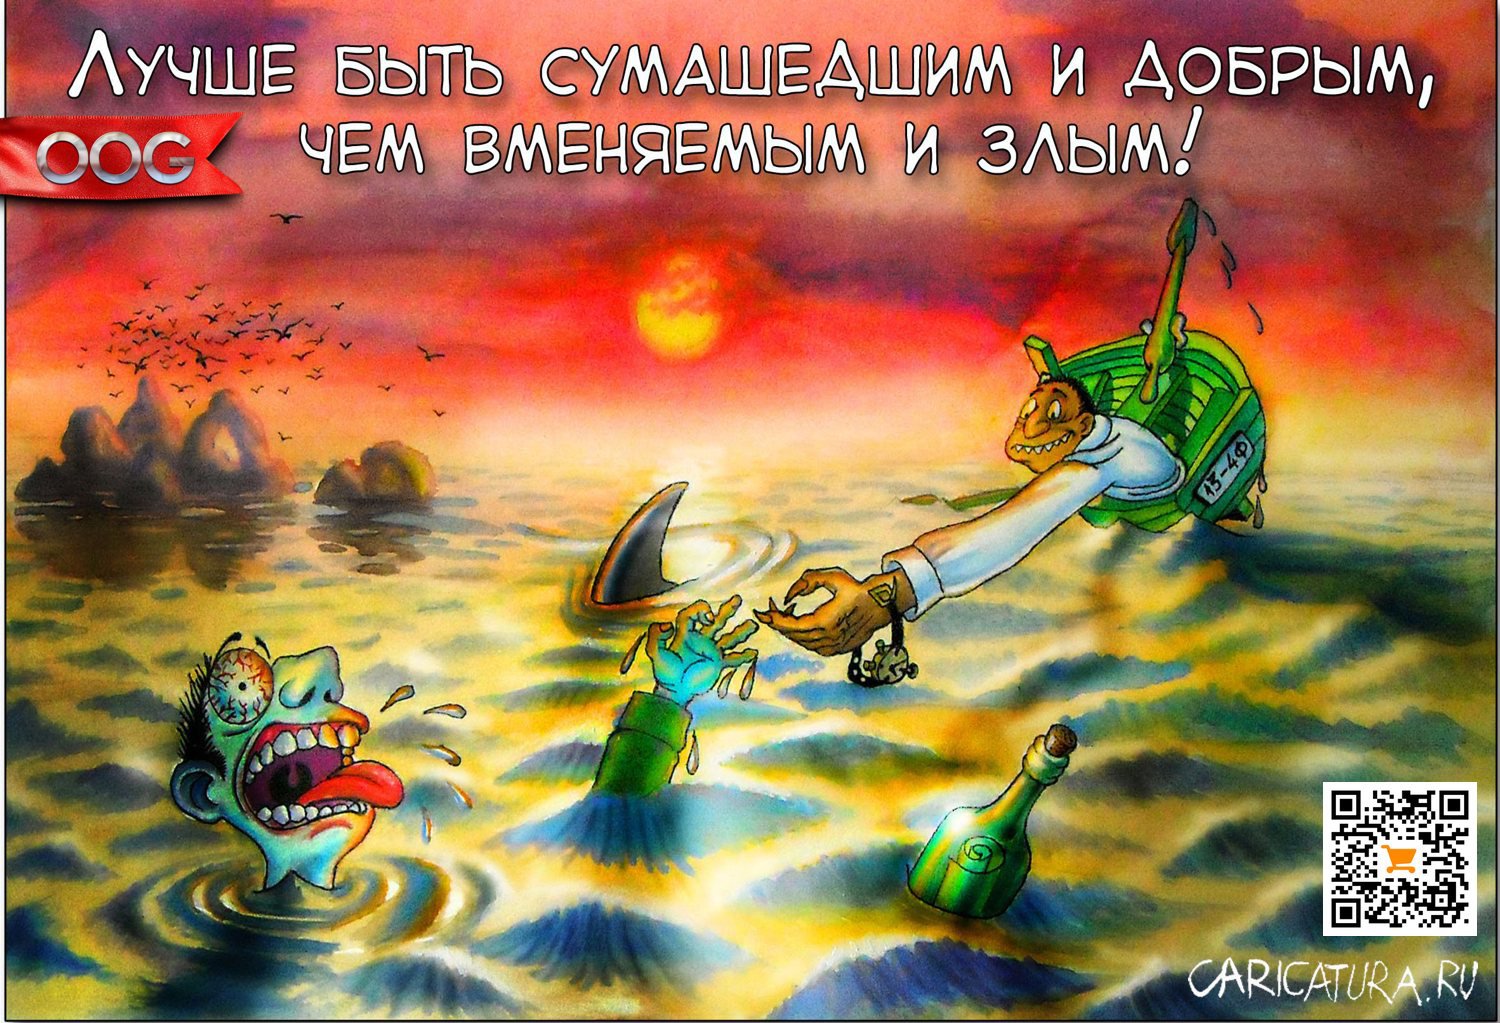 Карикатура "Друг протянул руку другу в море...", Олег-Олаф Гудвин